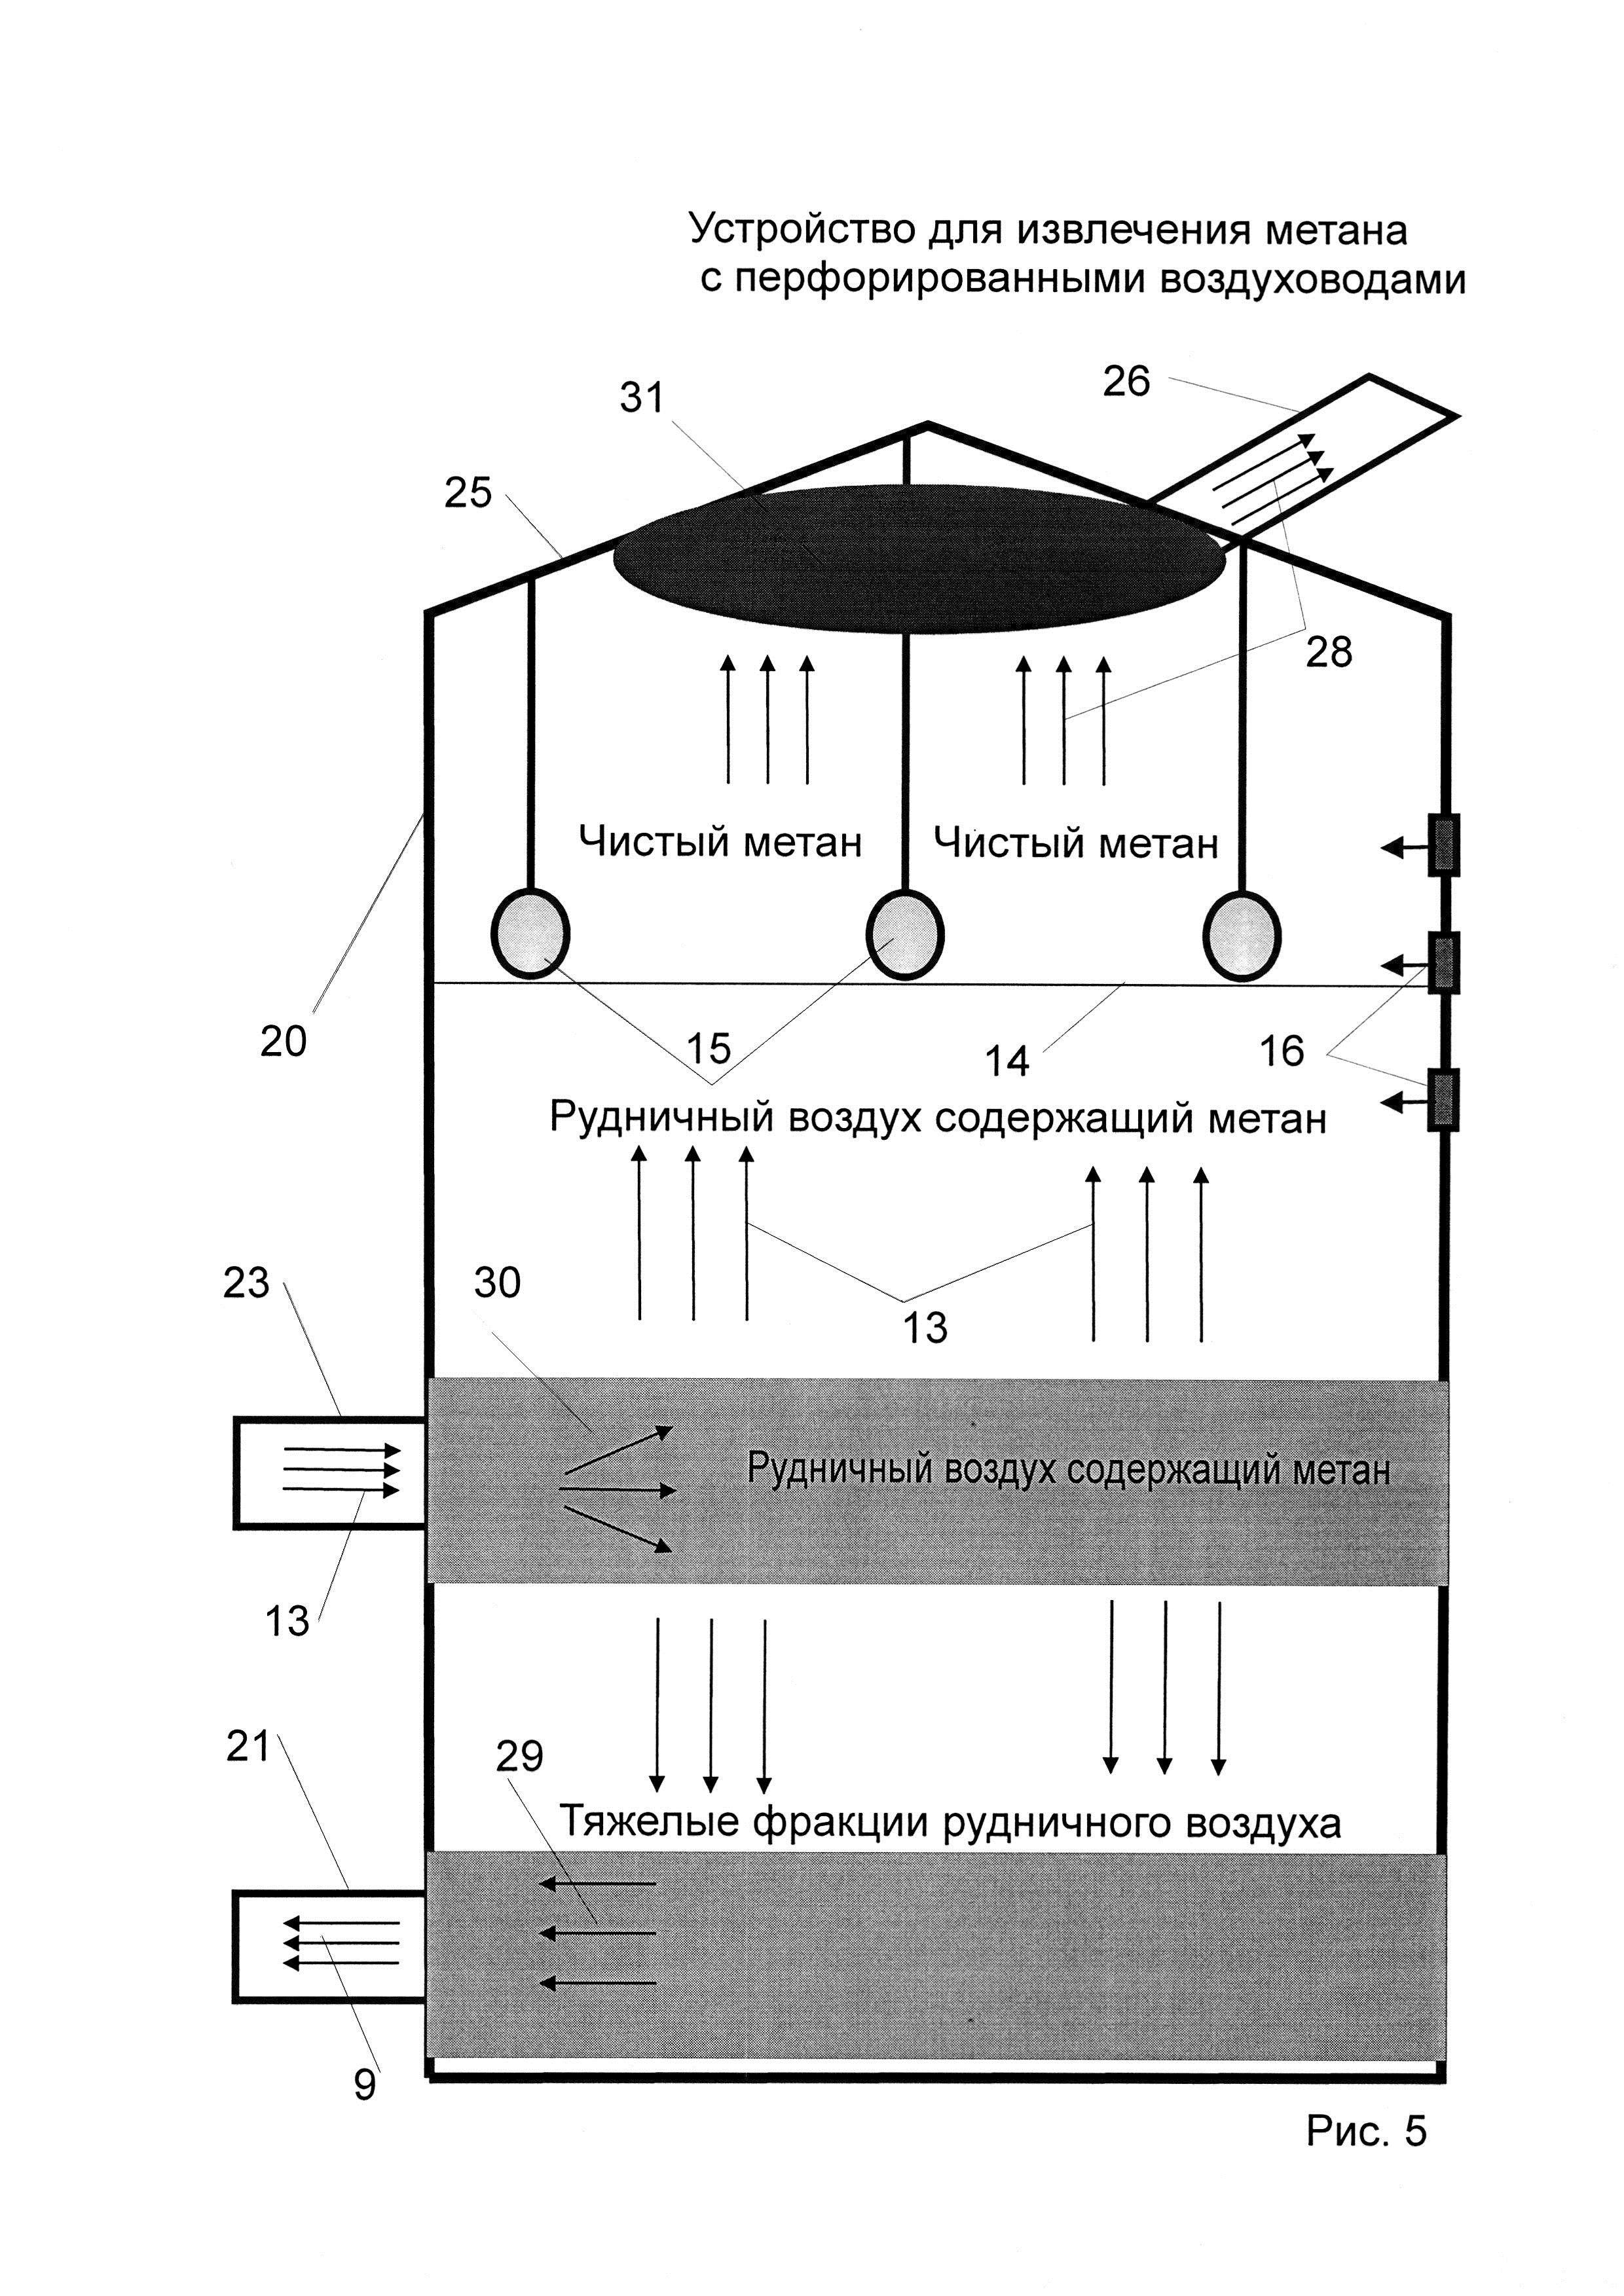 Система вентиляции угольной шахты и устройство для извлечения метана из рудничного воздуха (варианты)